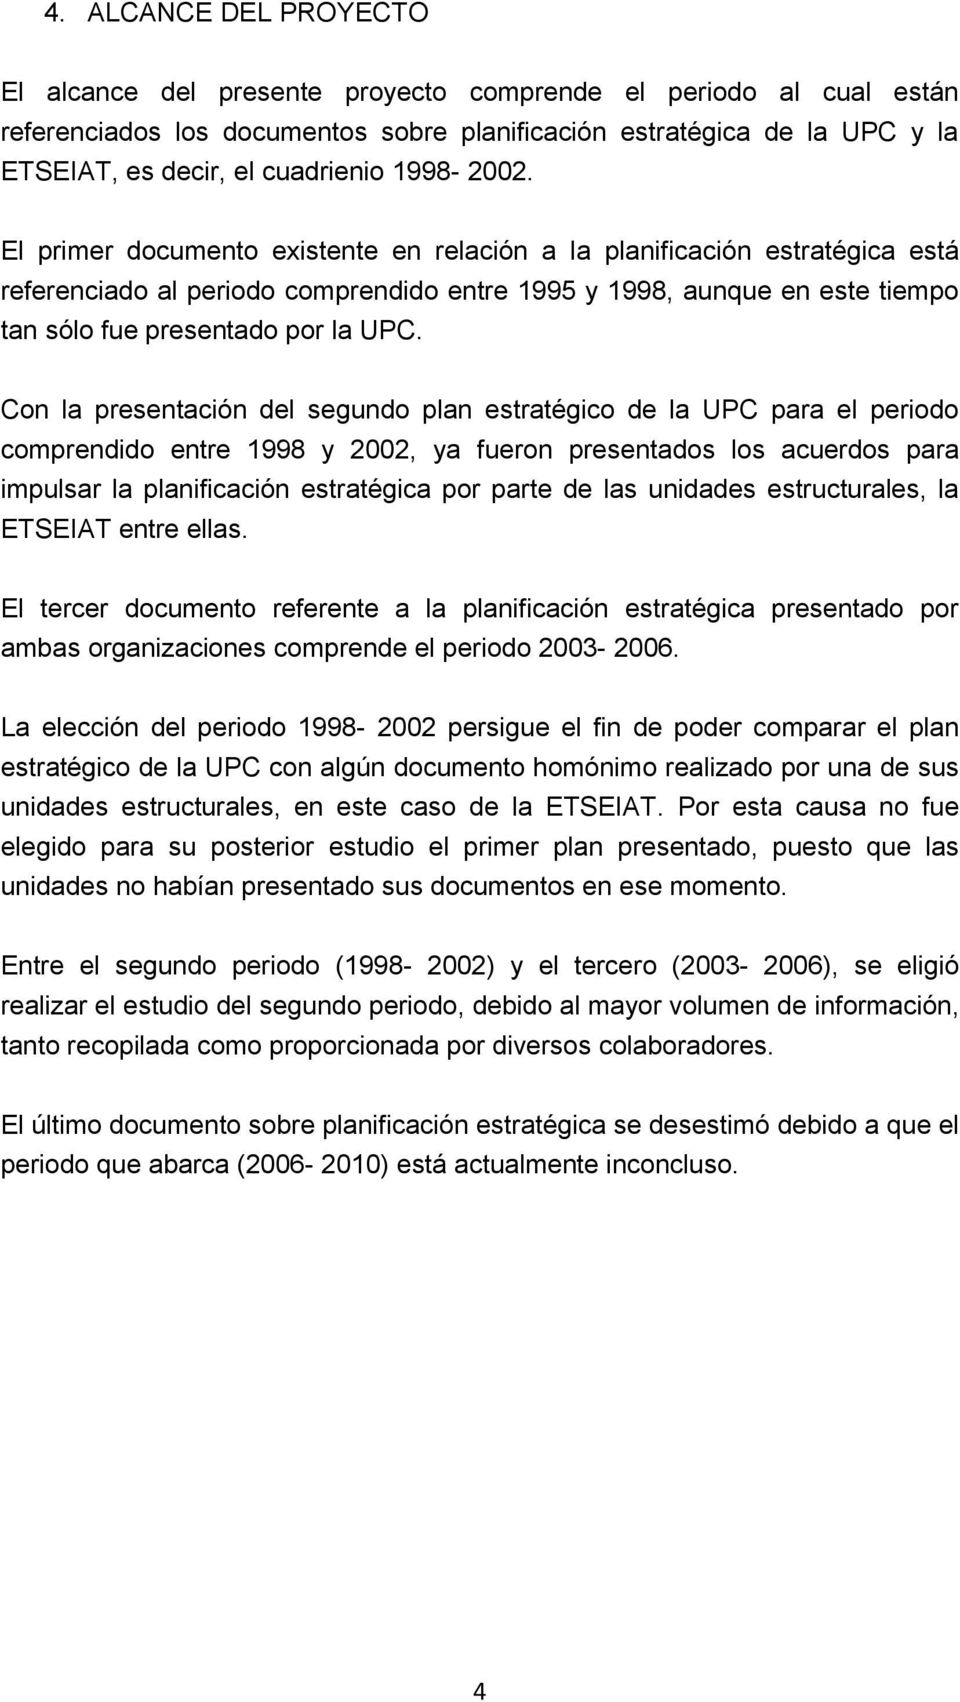 El primer documento existente en relación a la planificación estratégica está referenciado al periodo comprendido entre 1995 y 1998, aunque en este tiempo tan sólo fue presentado por la UPC.